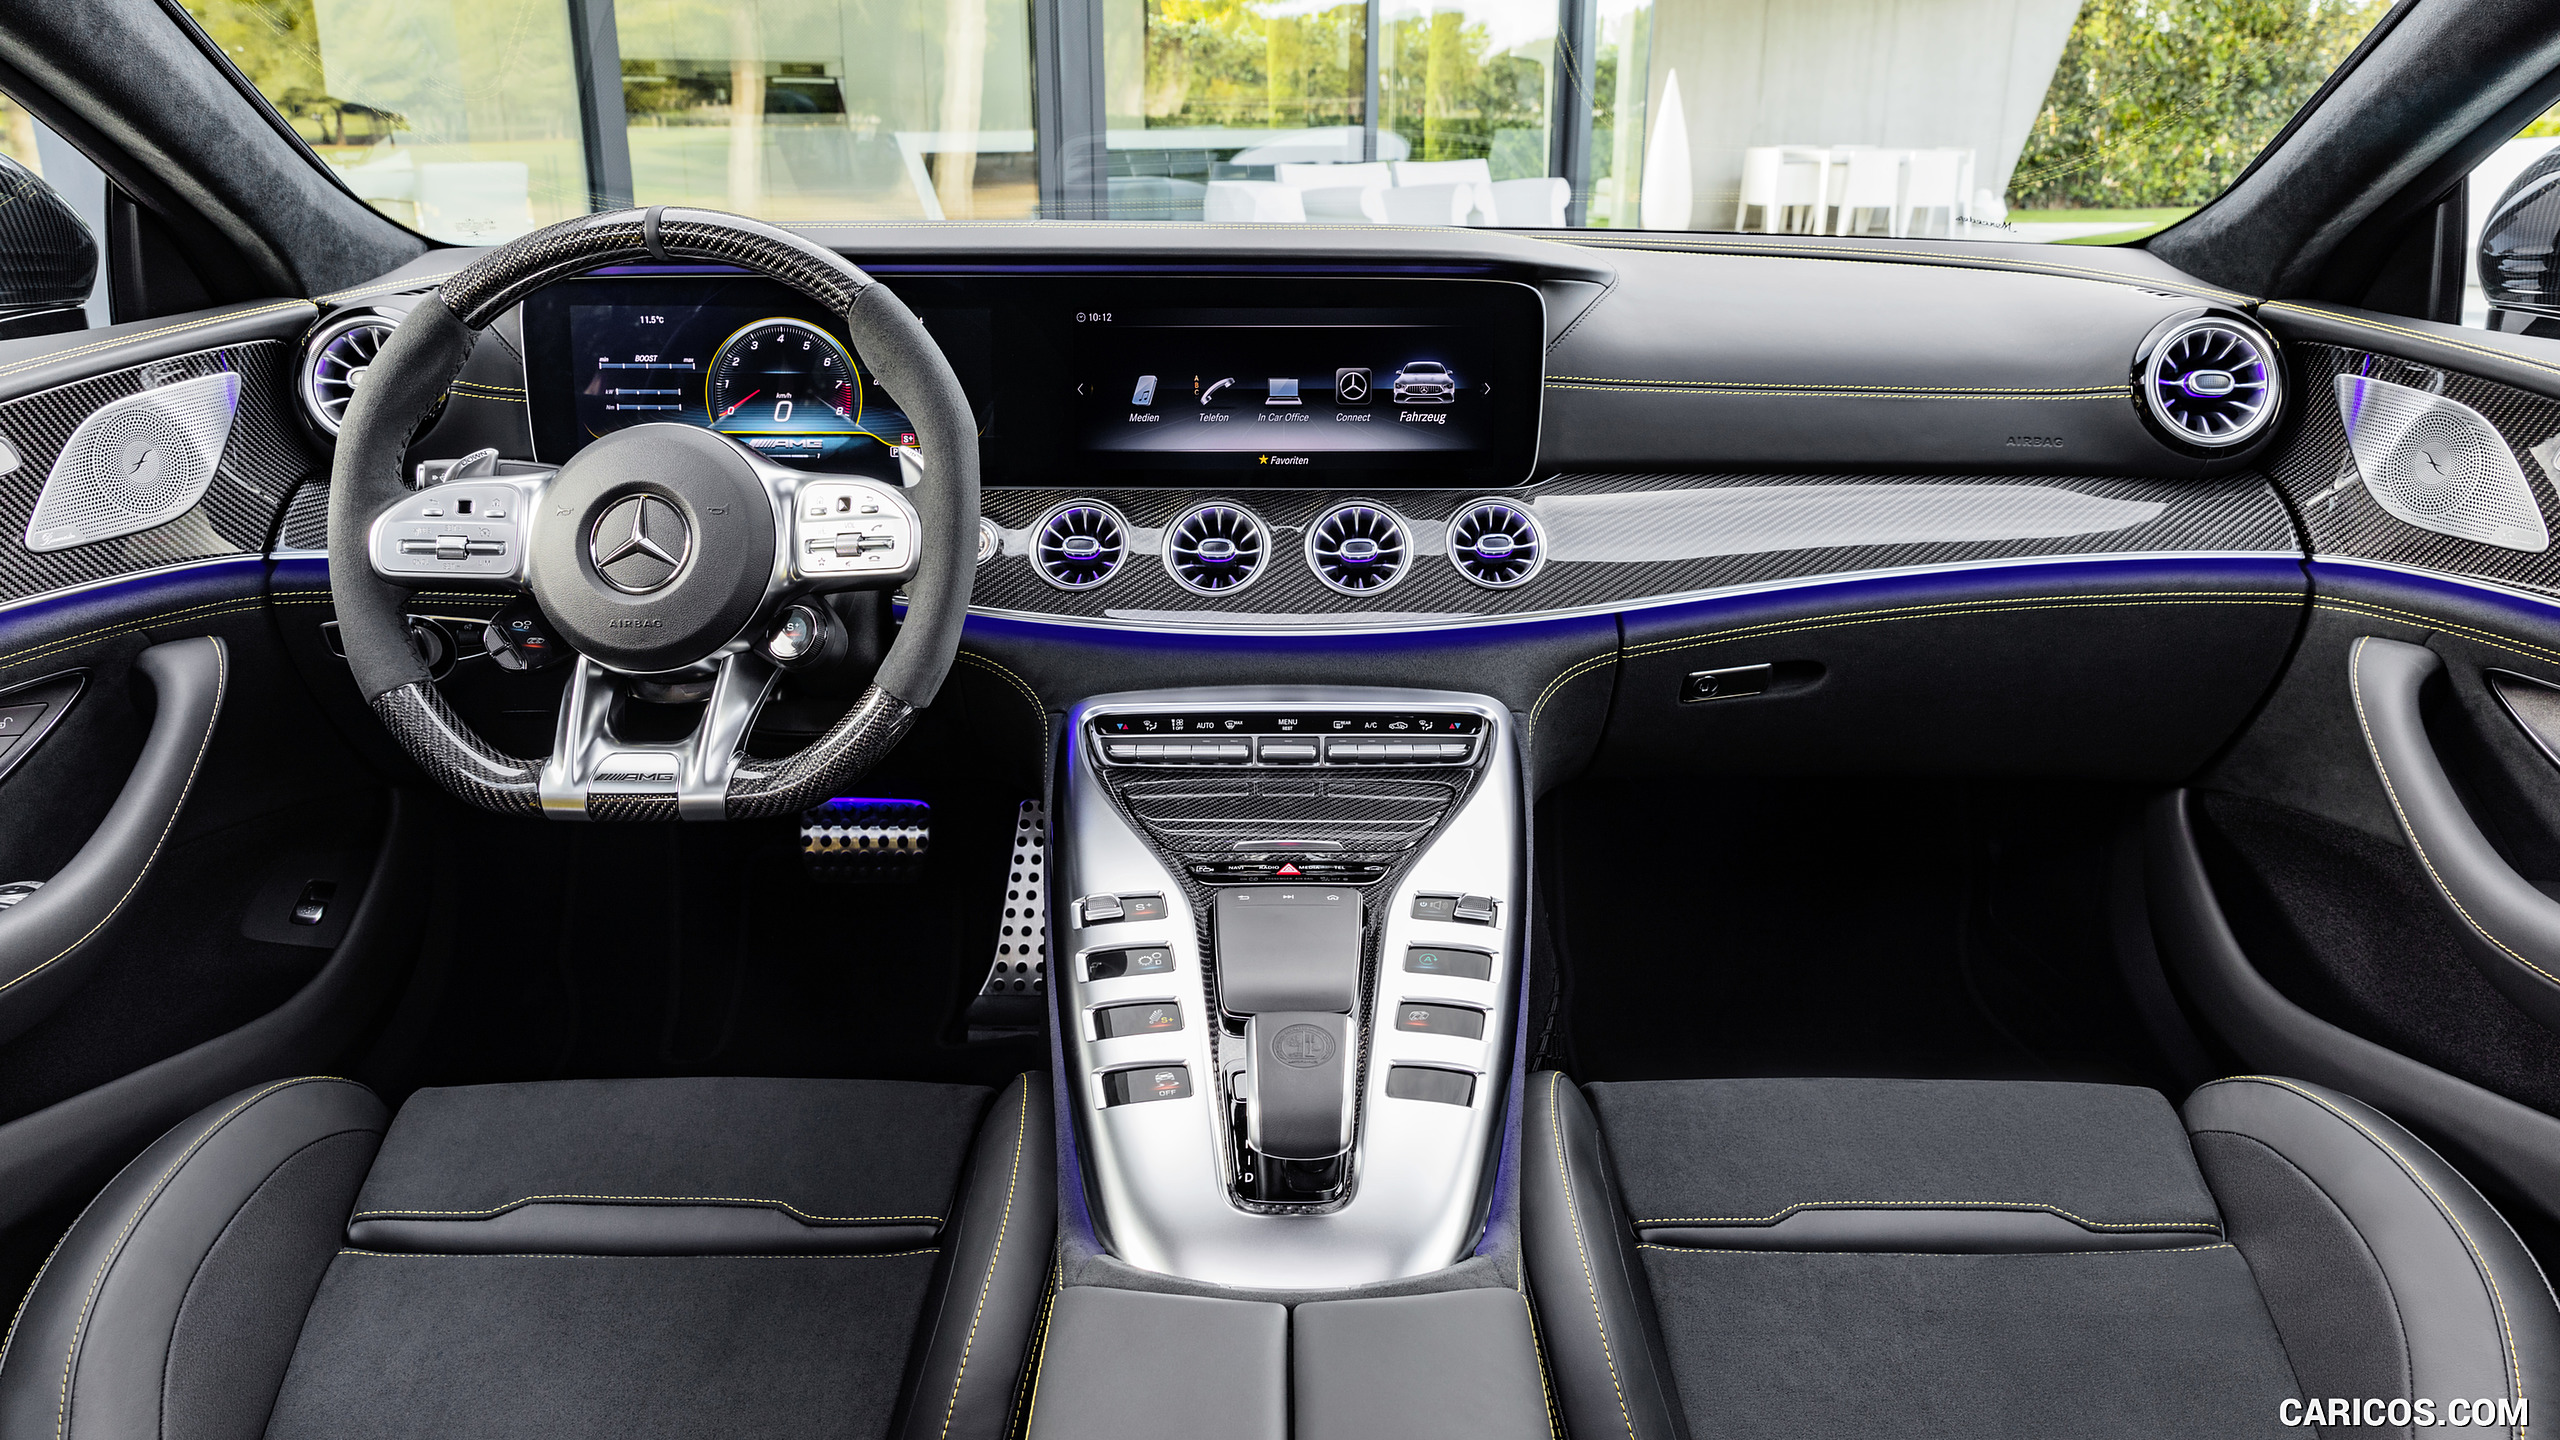 2019 Mercedes Amg Gt 63 S 4matic 4 Door Coupe Interior